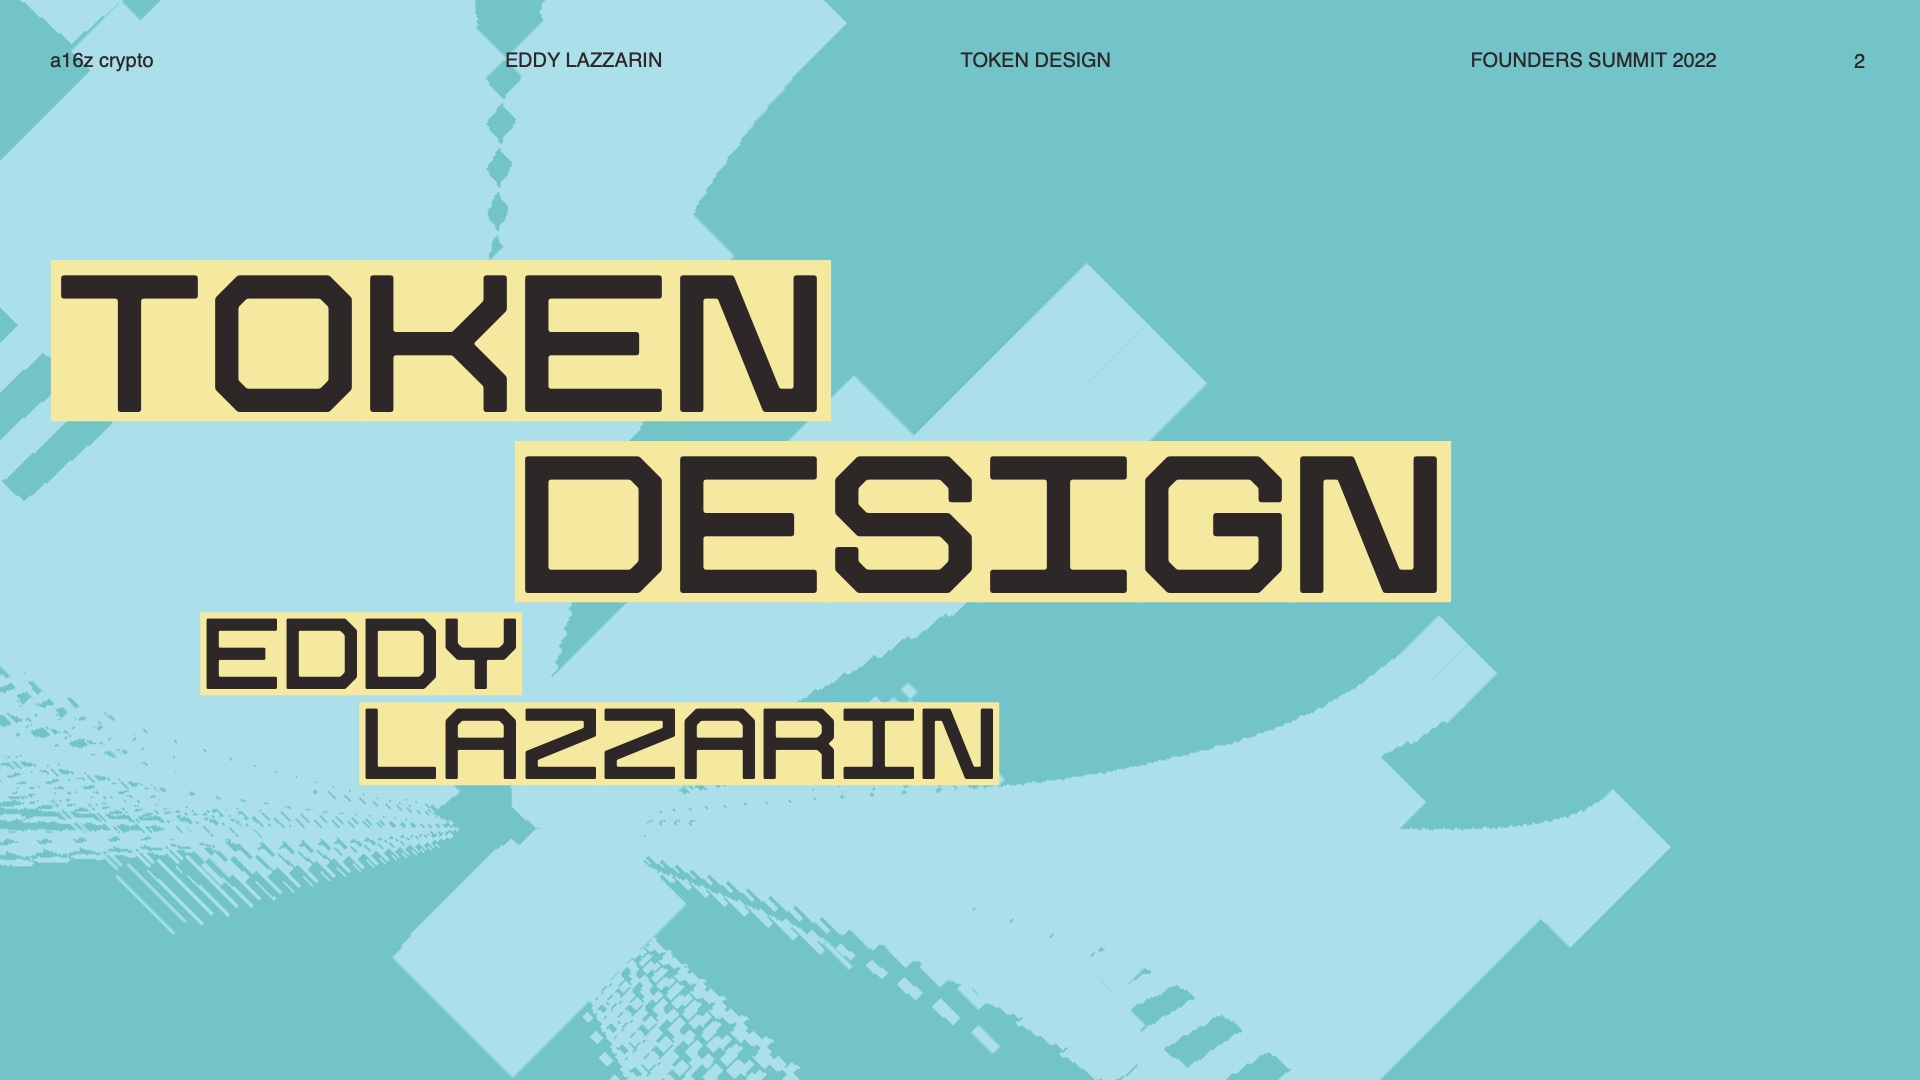 Token design: Mentális modellek, képességek és feltörekvő tervezési terek